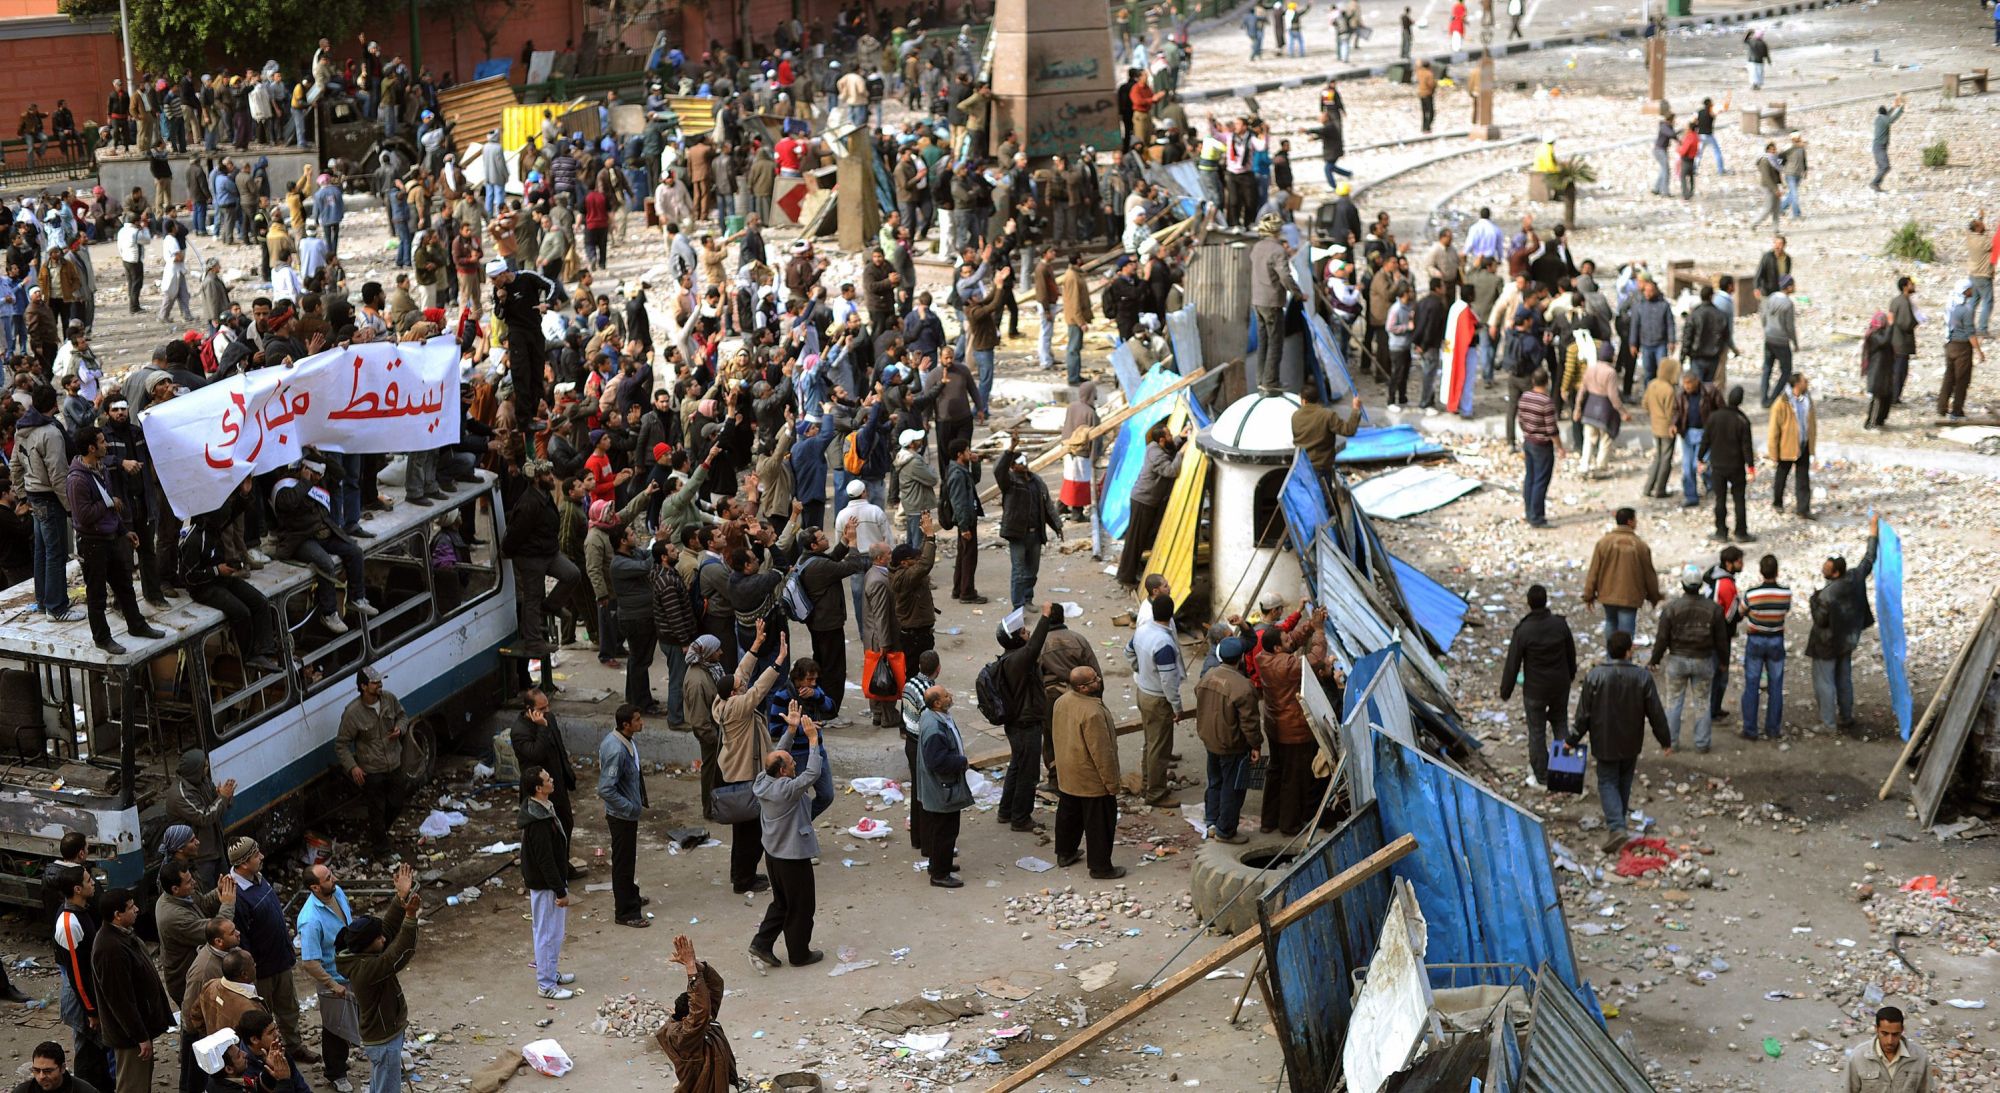 Започналите вчера прояви на насилие на площад ”Тахрир” ще бъдат разследвани